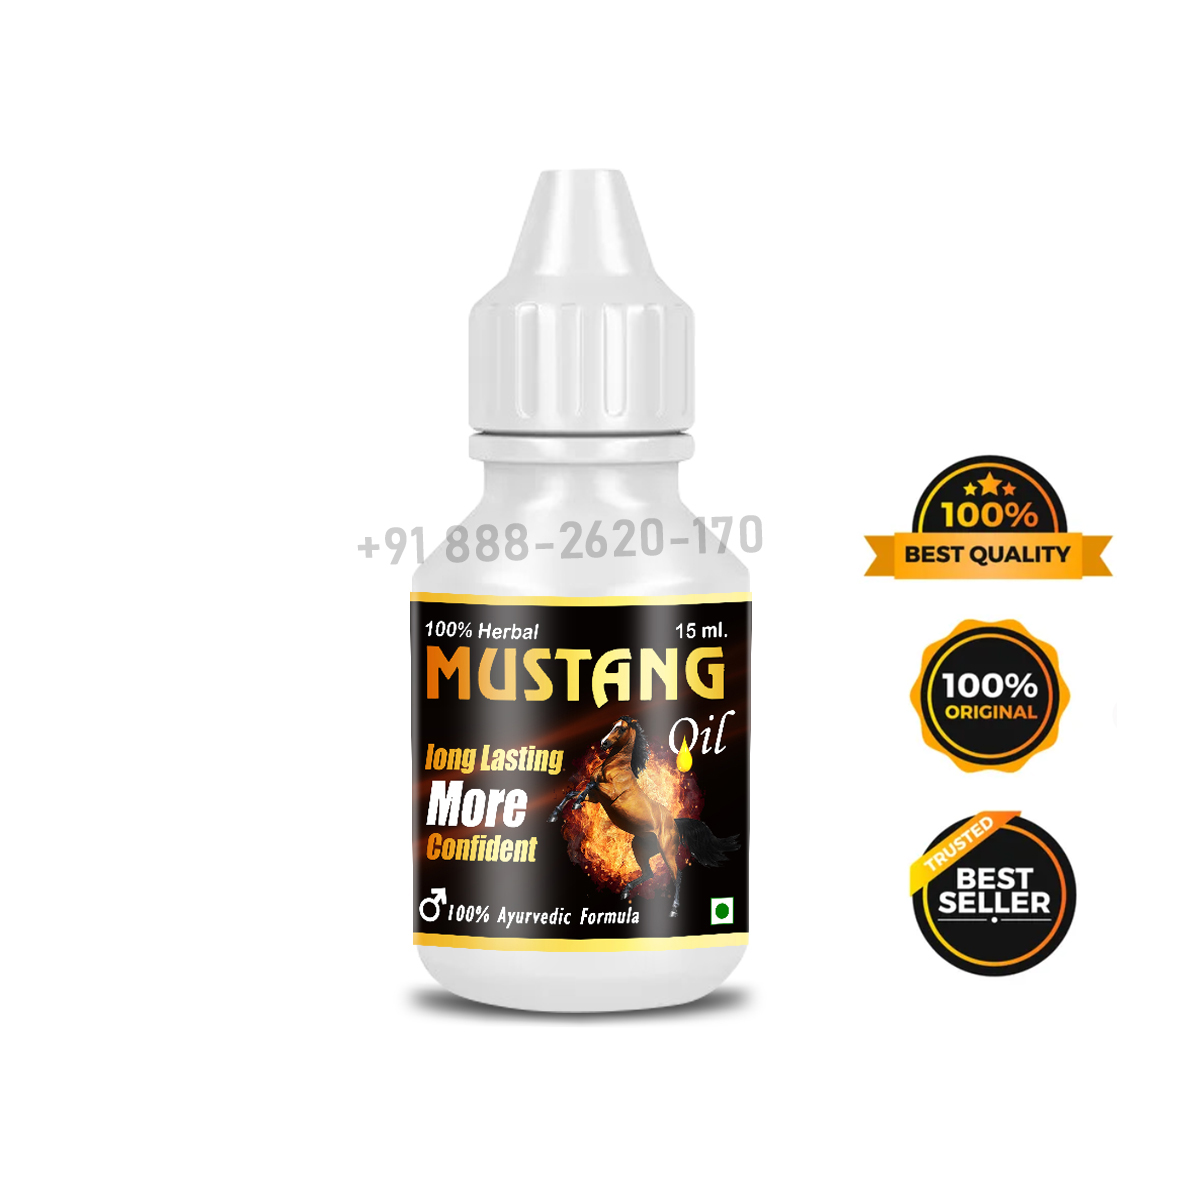 Mustang Oil For Men 100% Ayurvedic & Herbal Formula